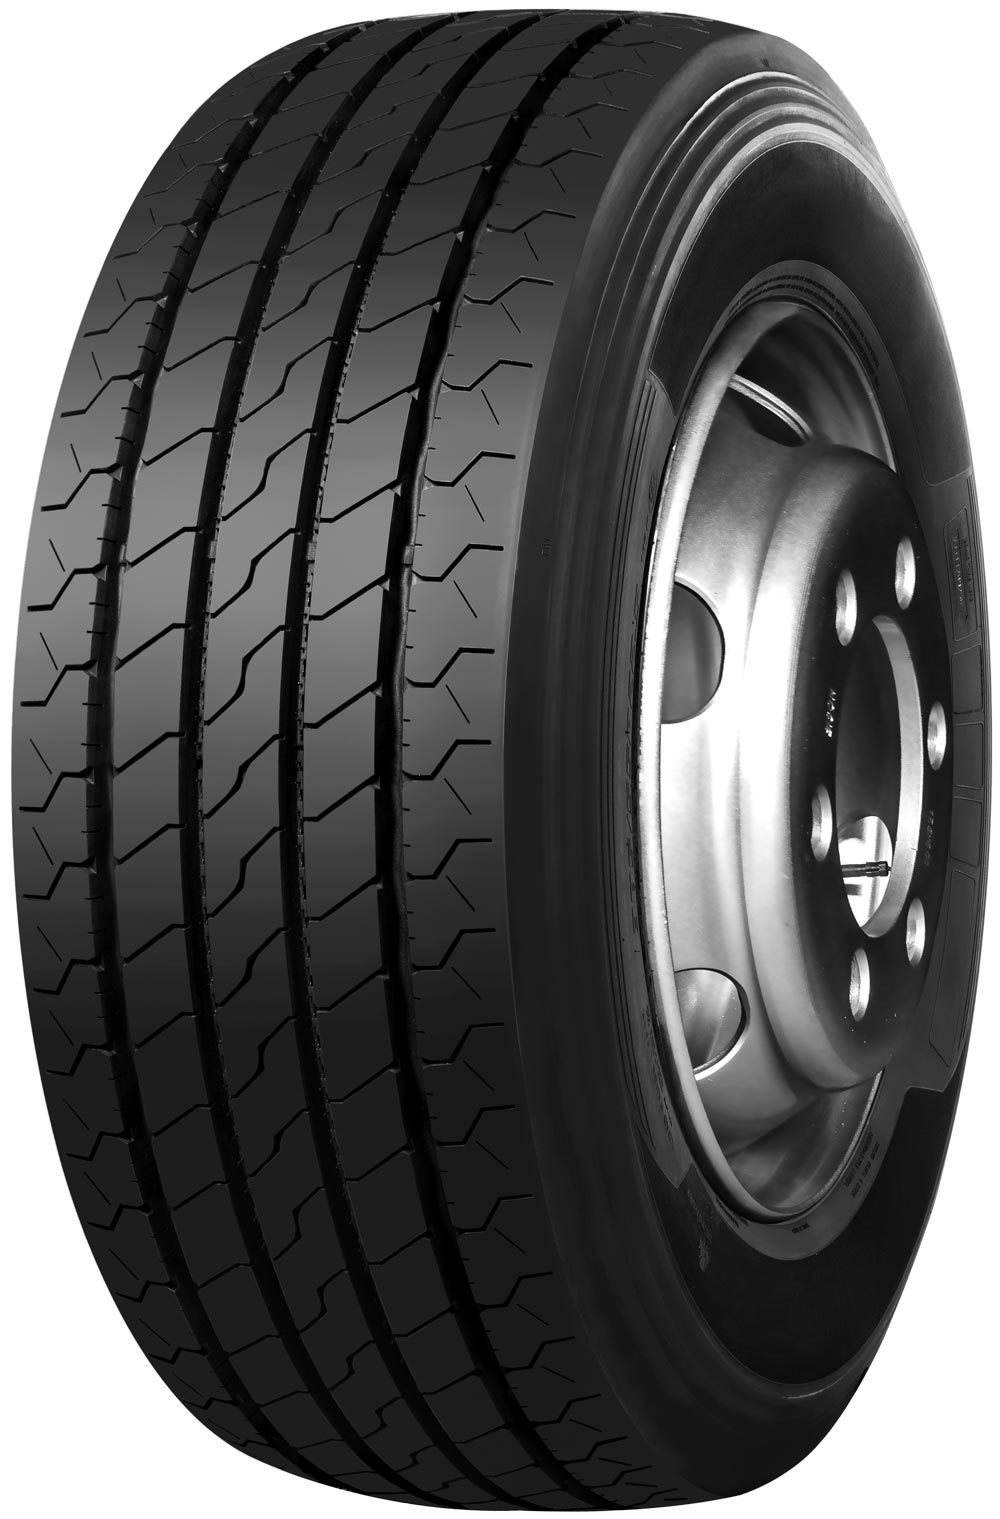 product_type-heavy_tires TRAZANO NOVO TRANS S 14 TL 205/75 R17.5 124M